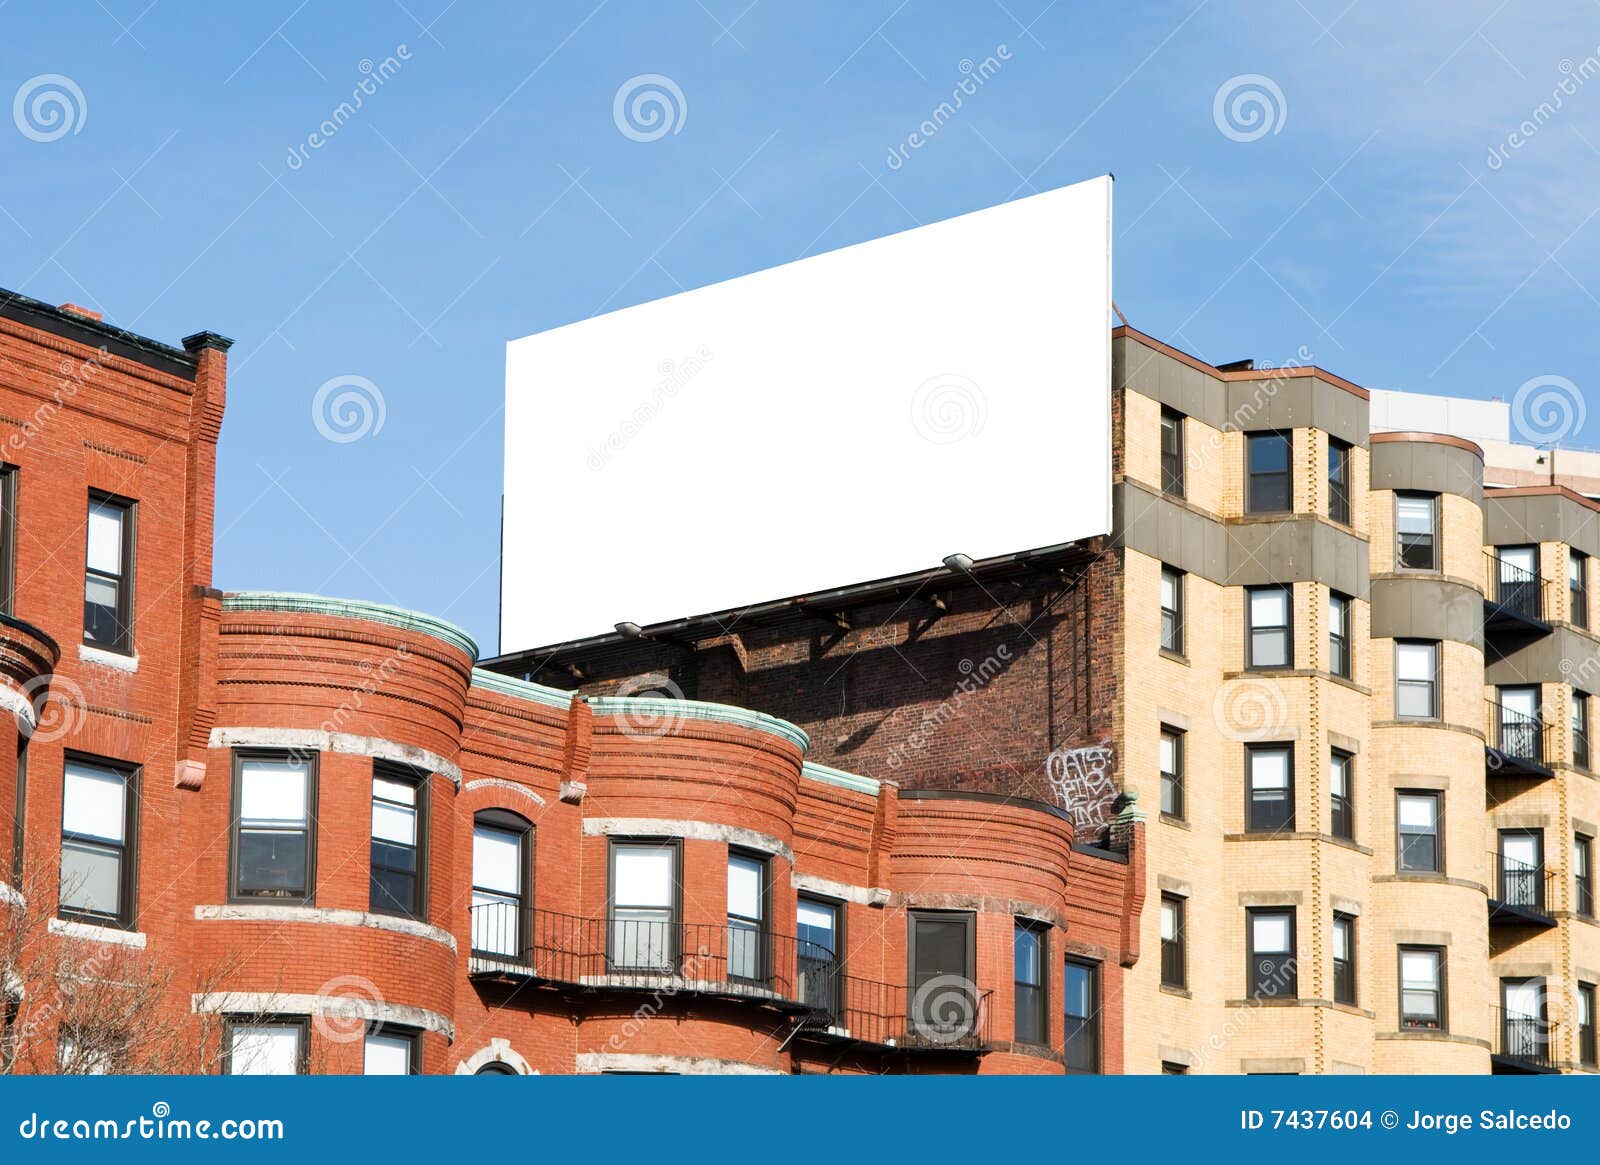 billboard in the city